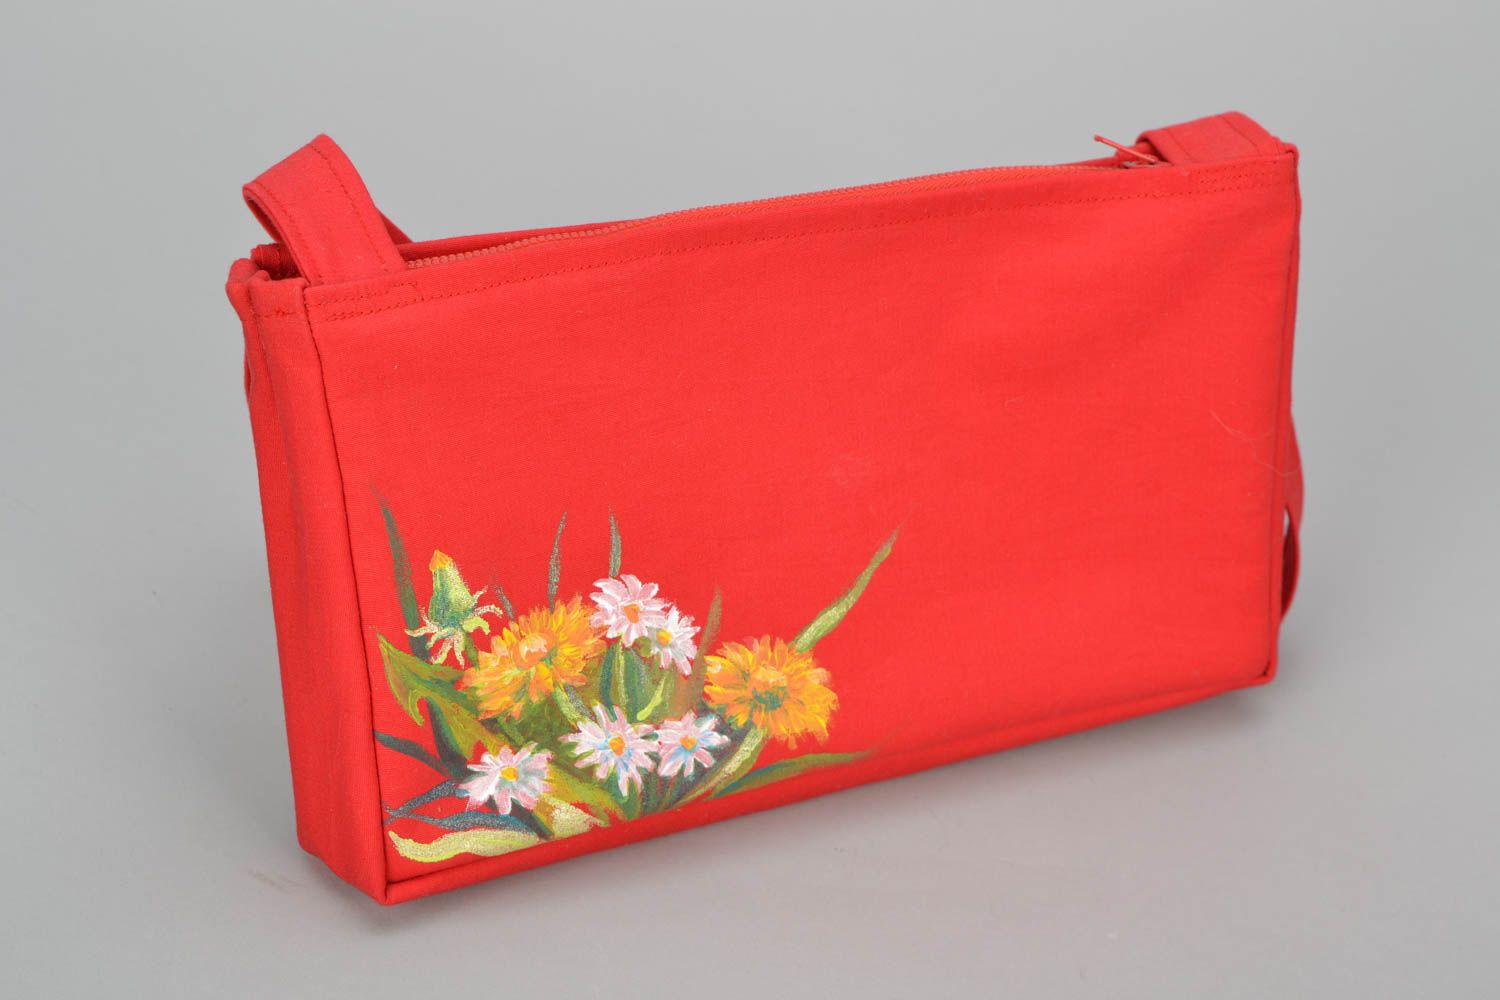 Textil Handtasche in Rot  foto 1